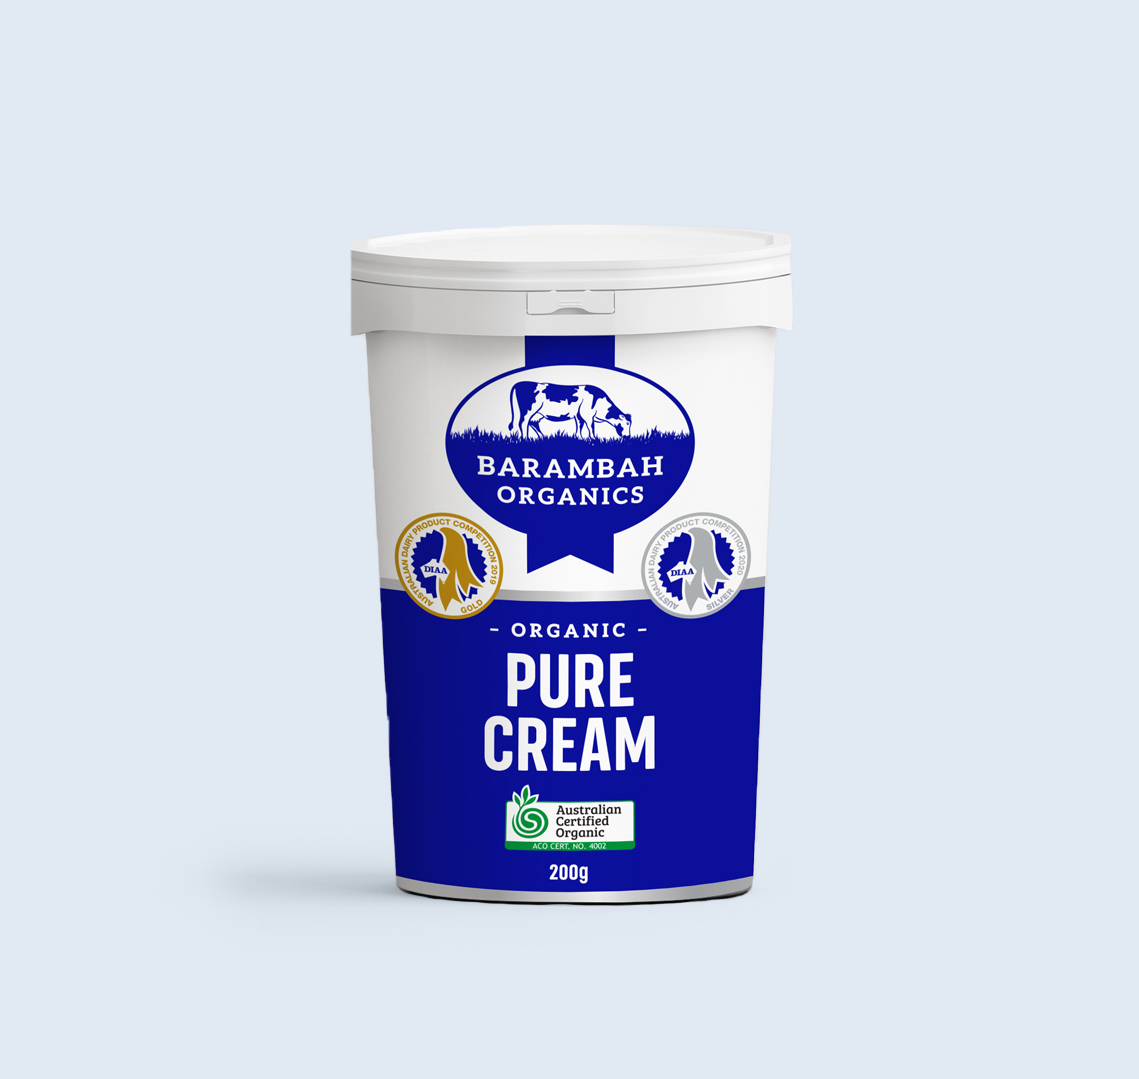 200g of Pure Cream - Organic Pure Cream - Barambah Organics